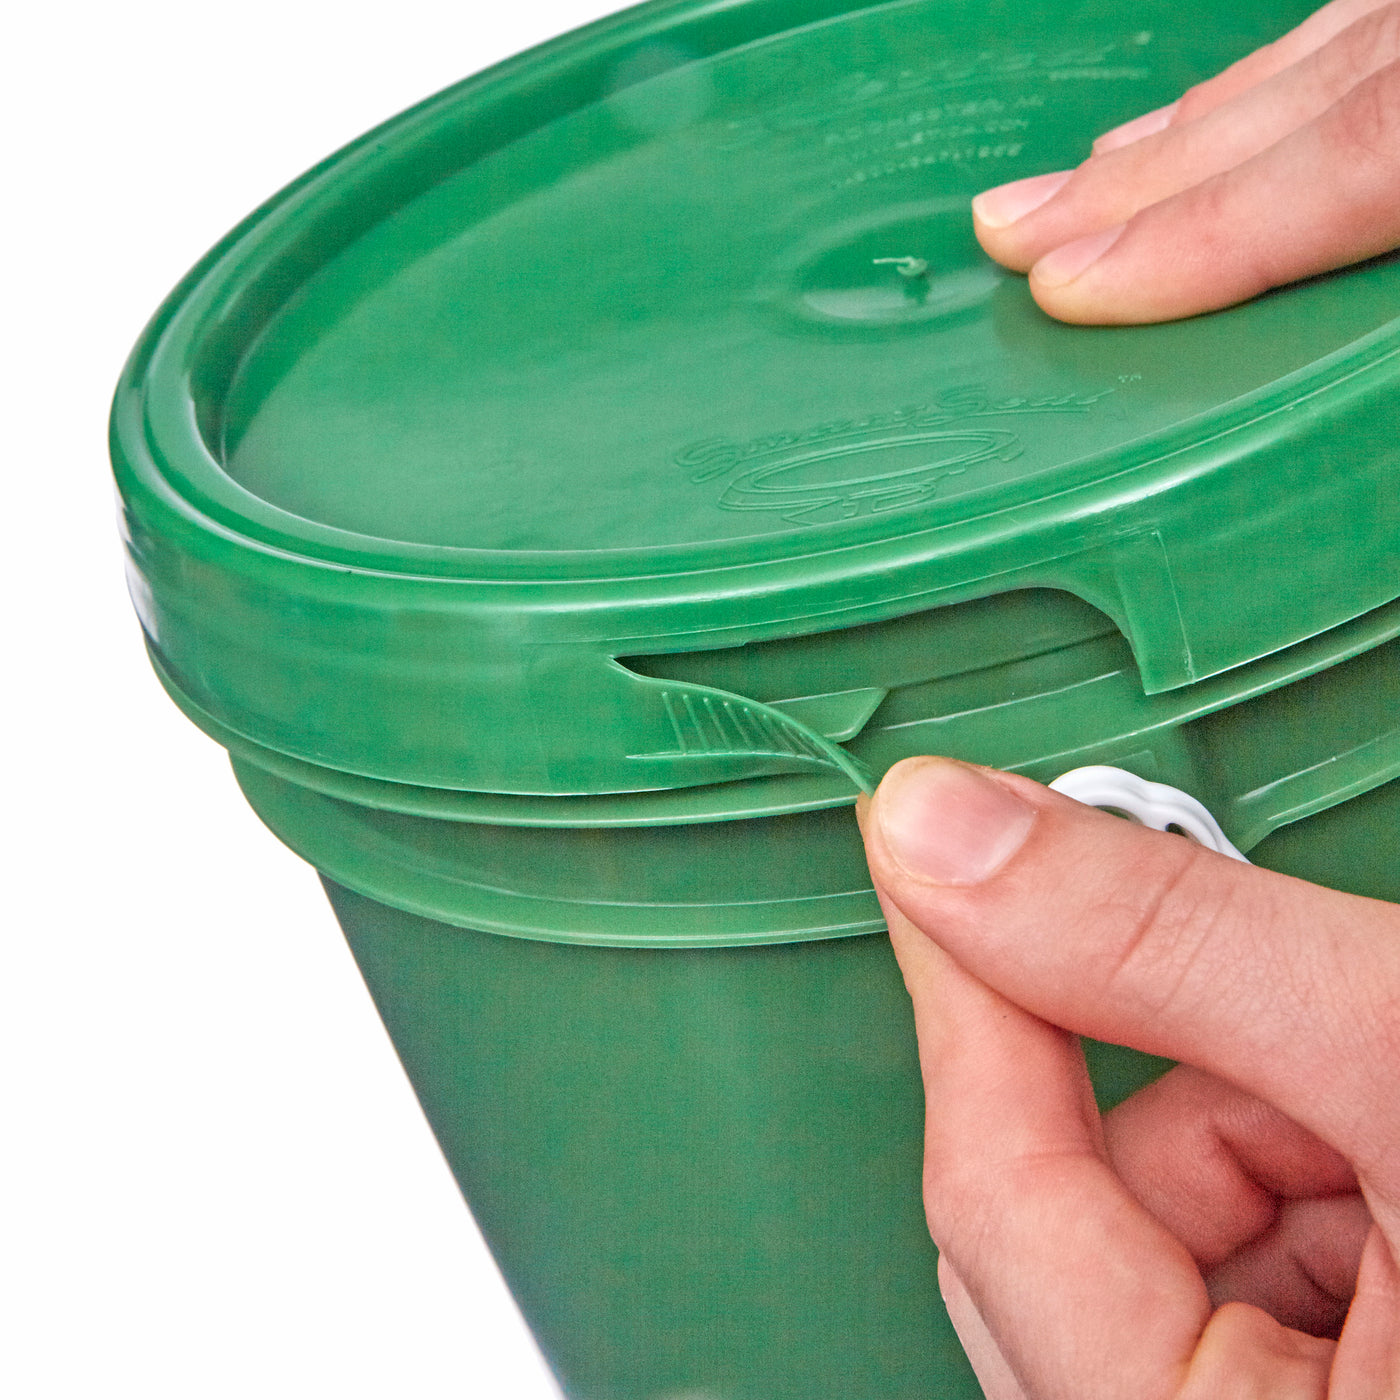 1 Gallon Pails - Plastic Handle # Pail Only, Green